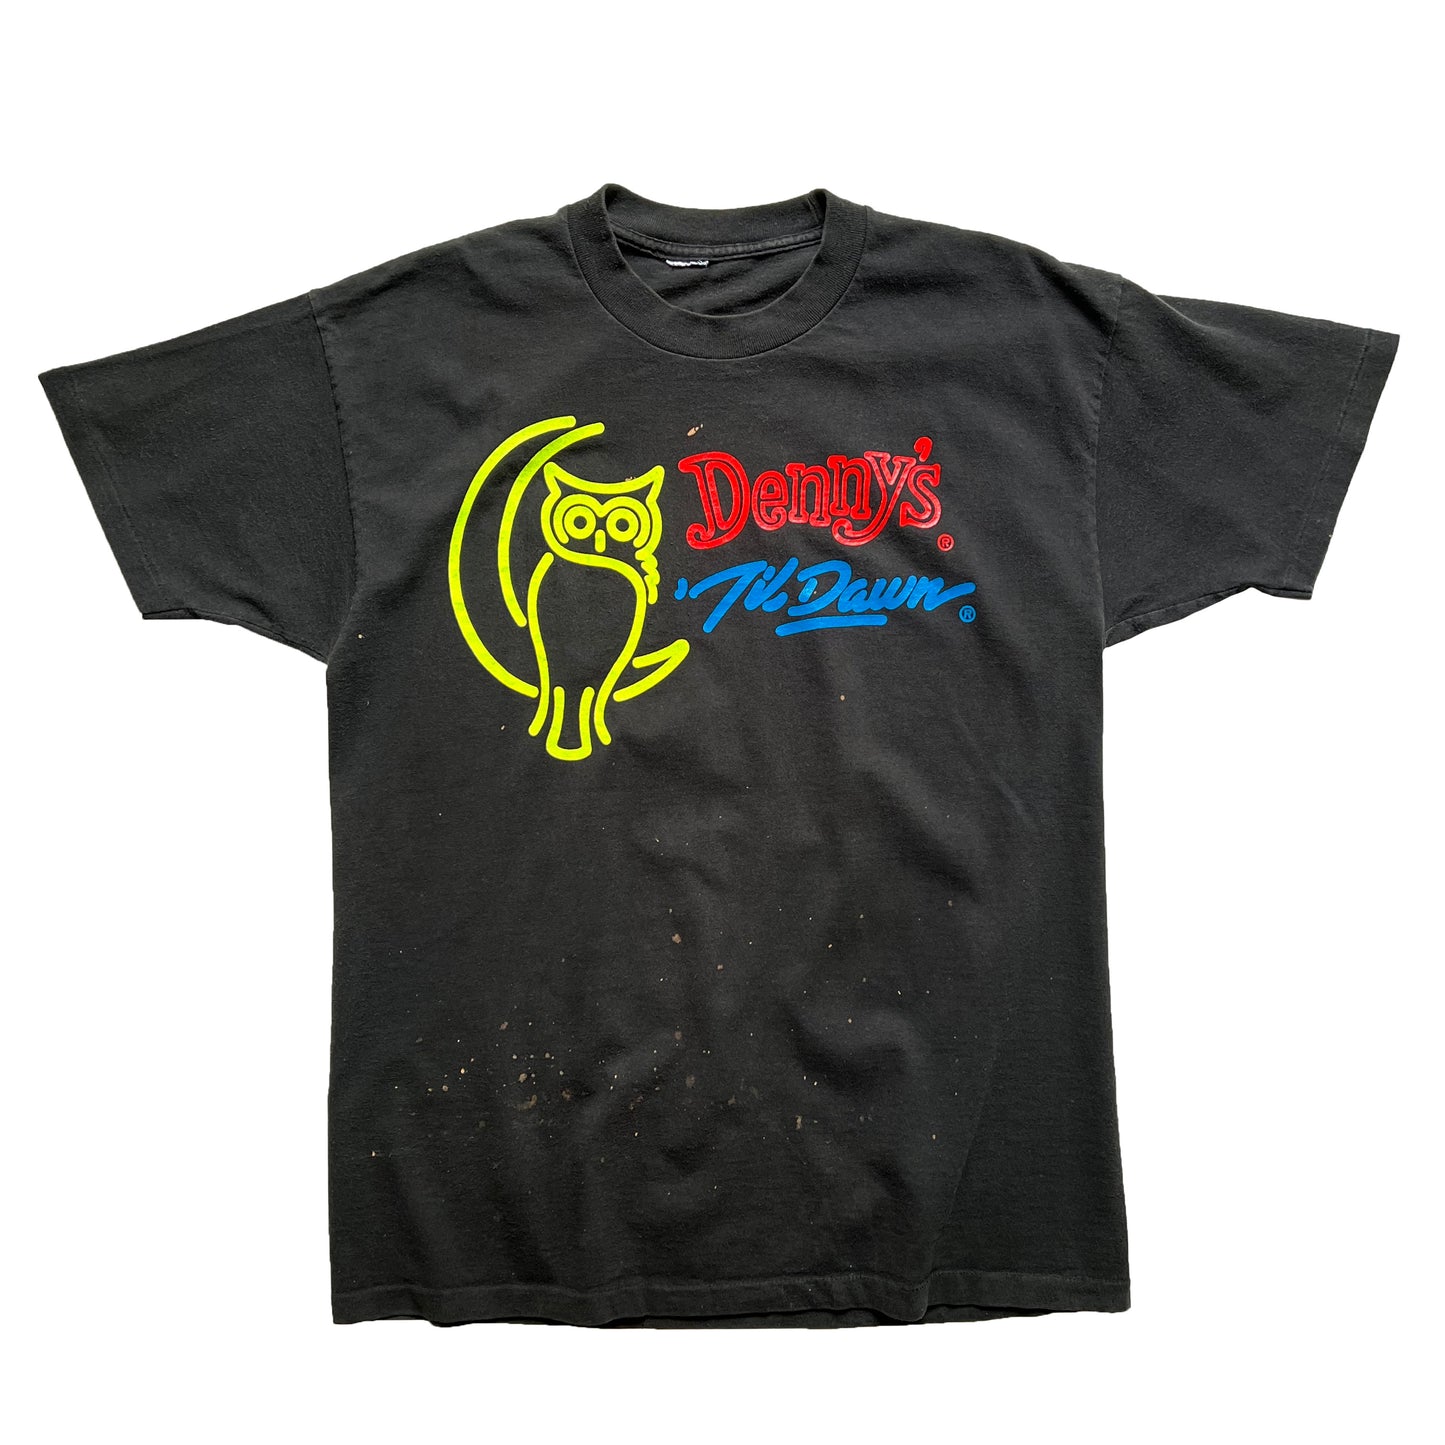 90's DENNY'S "Denny's Till Dawn" T-SHIRT